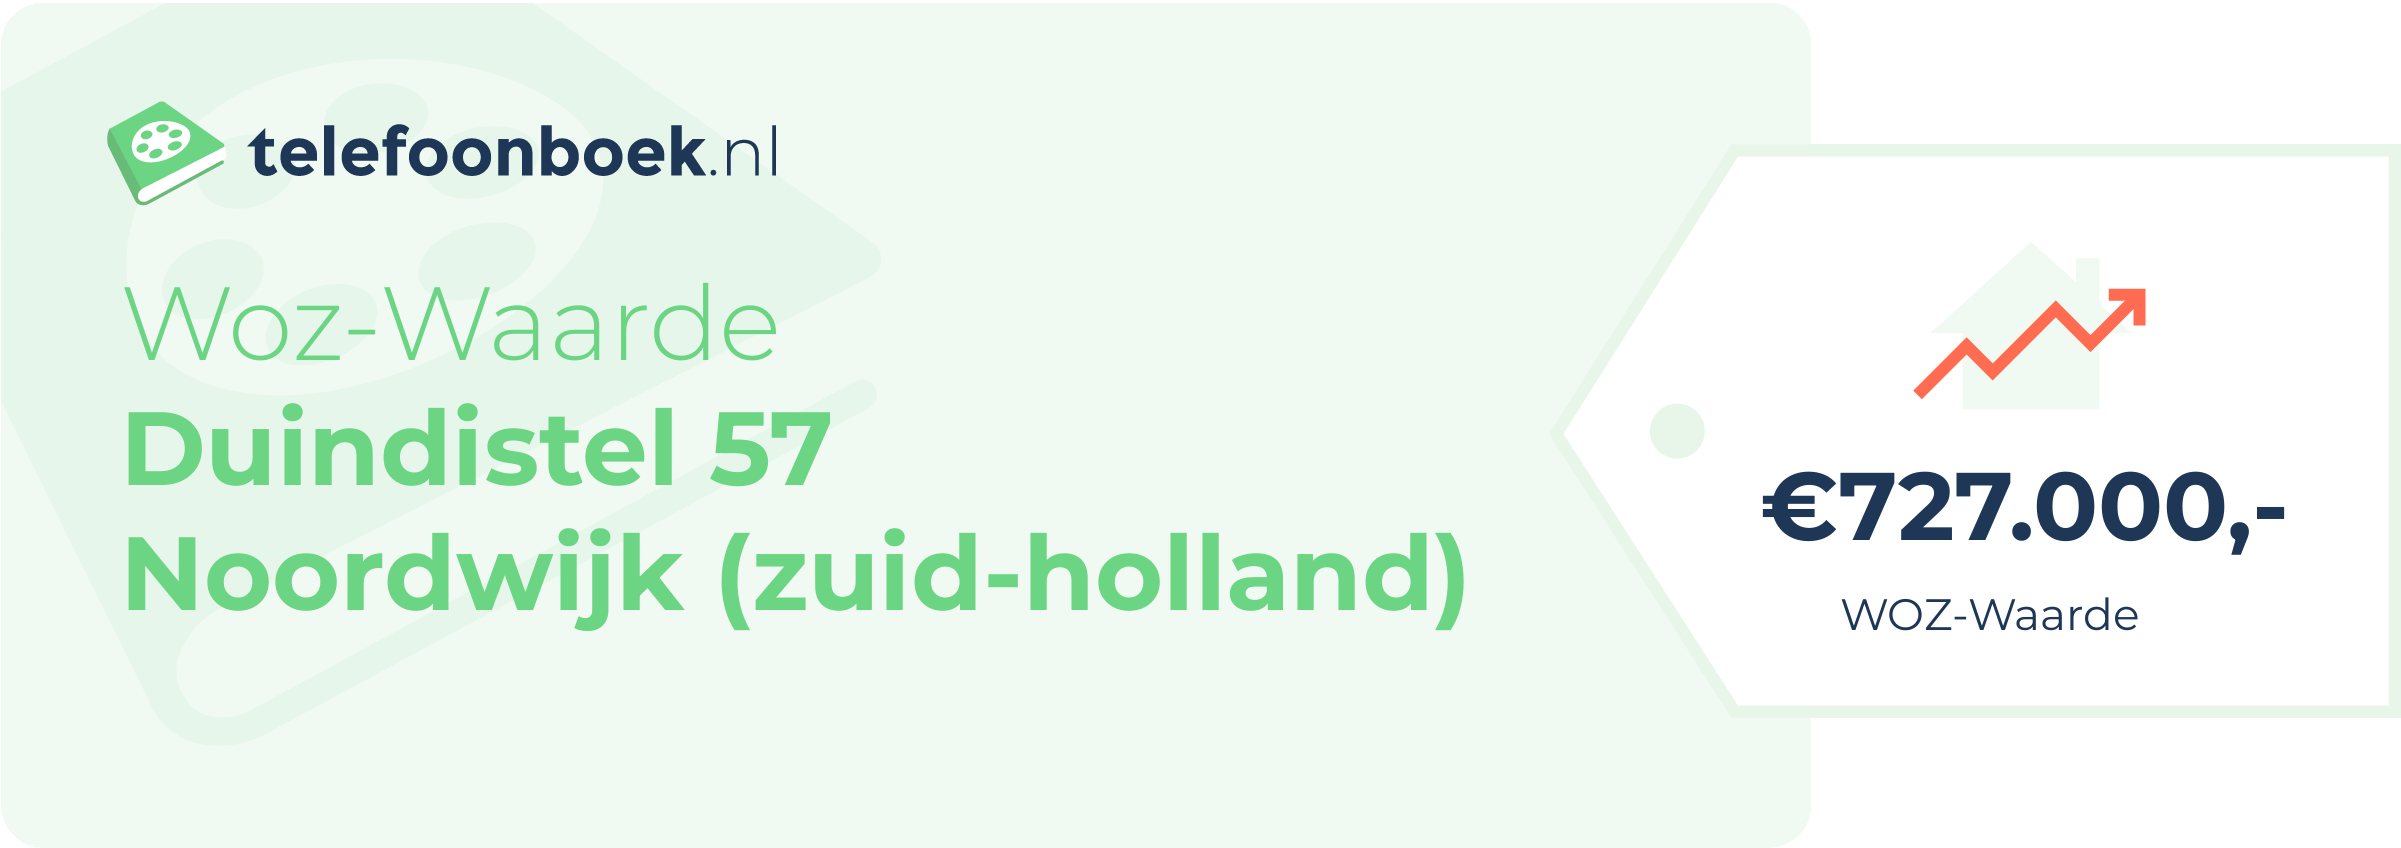 WOZ-waarde Duindistel 57 Noordwijk (Zuid-Holland)